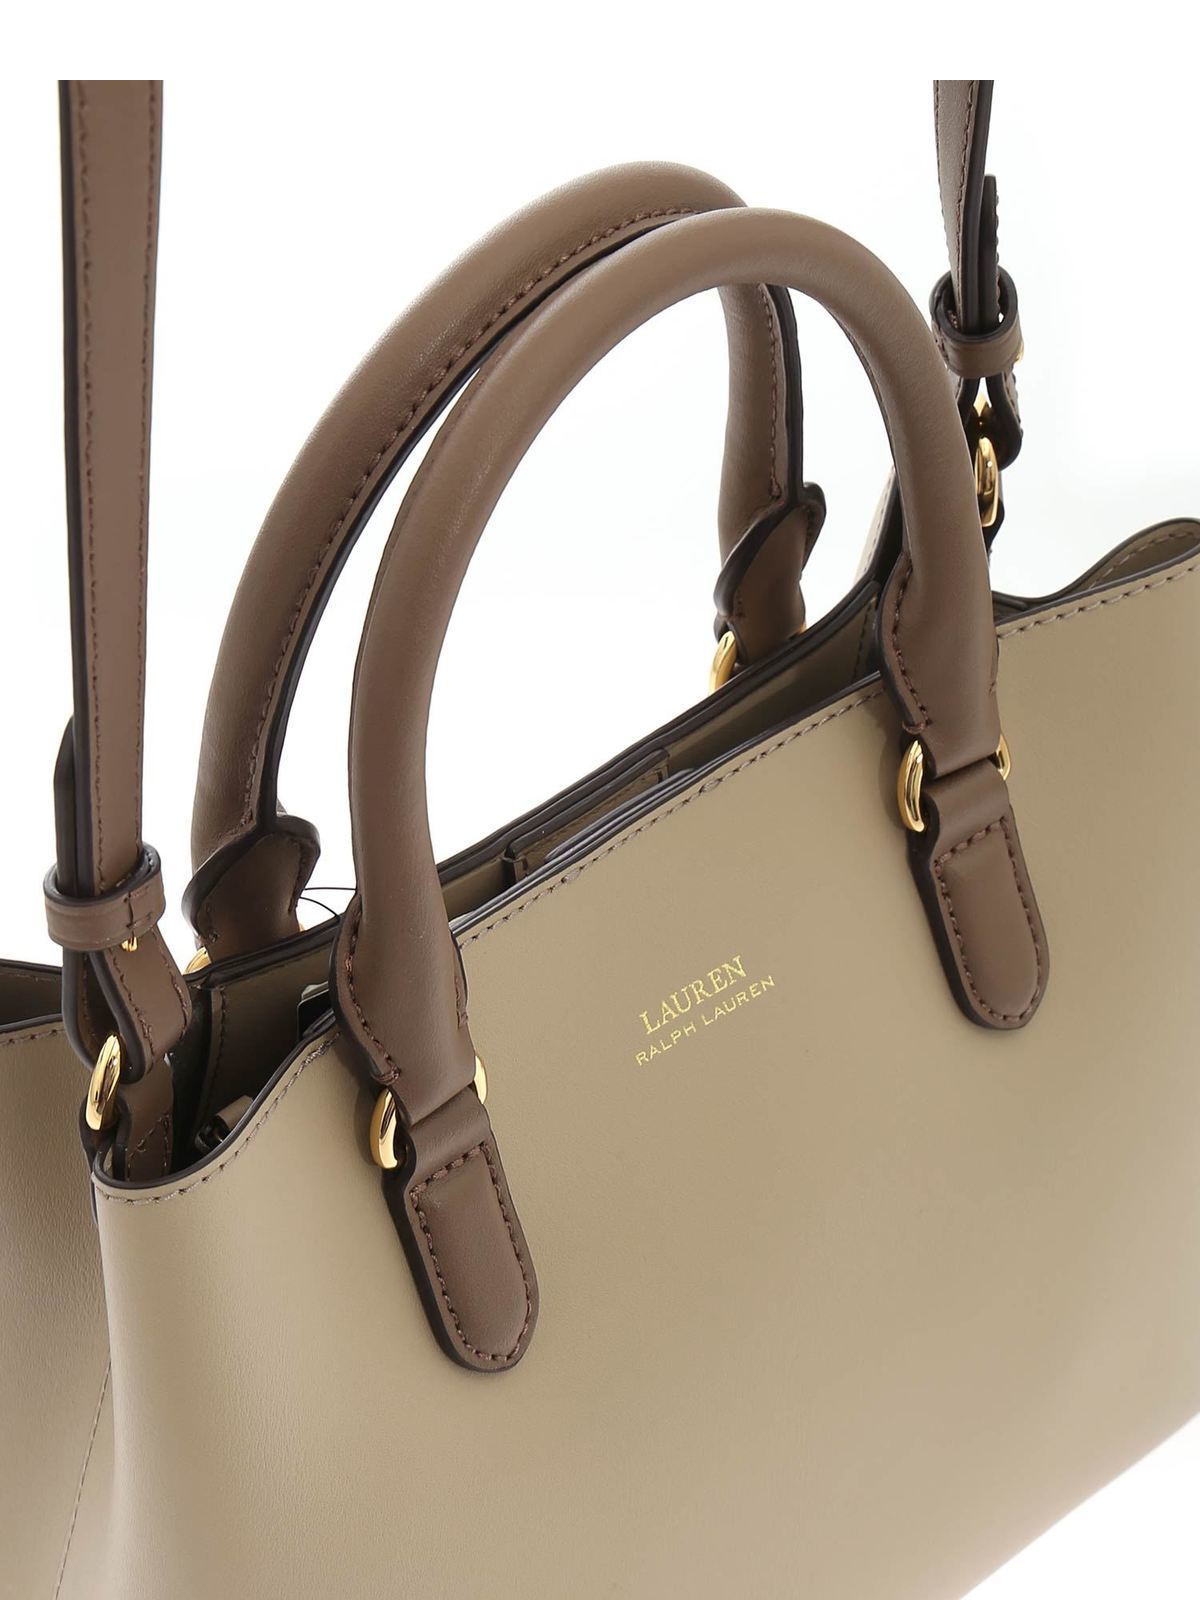 Totes bags Lauren Ralph Lauren - Marcy bag in beige - 431775153014